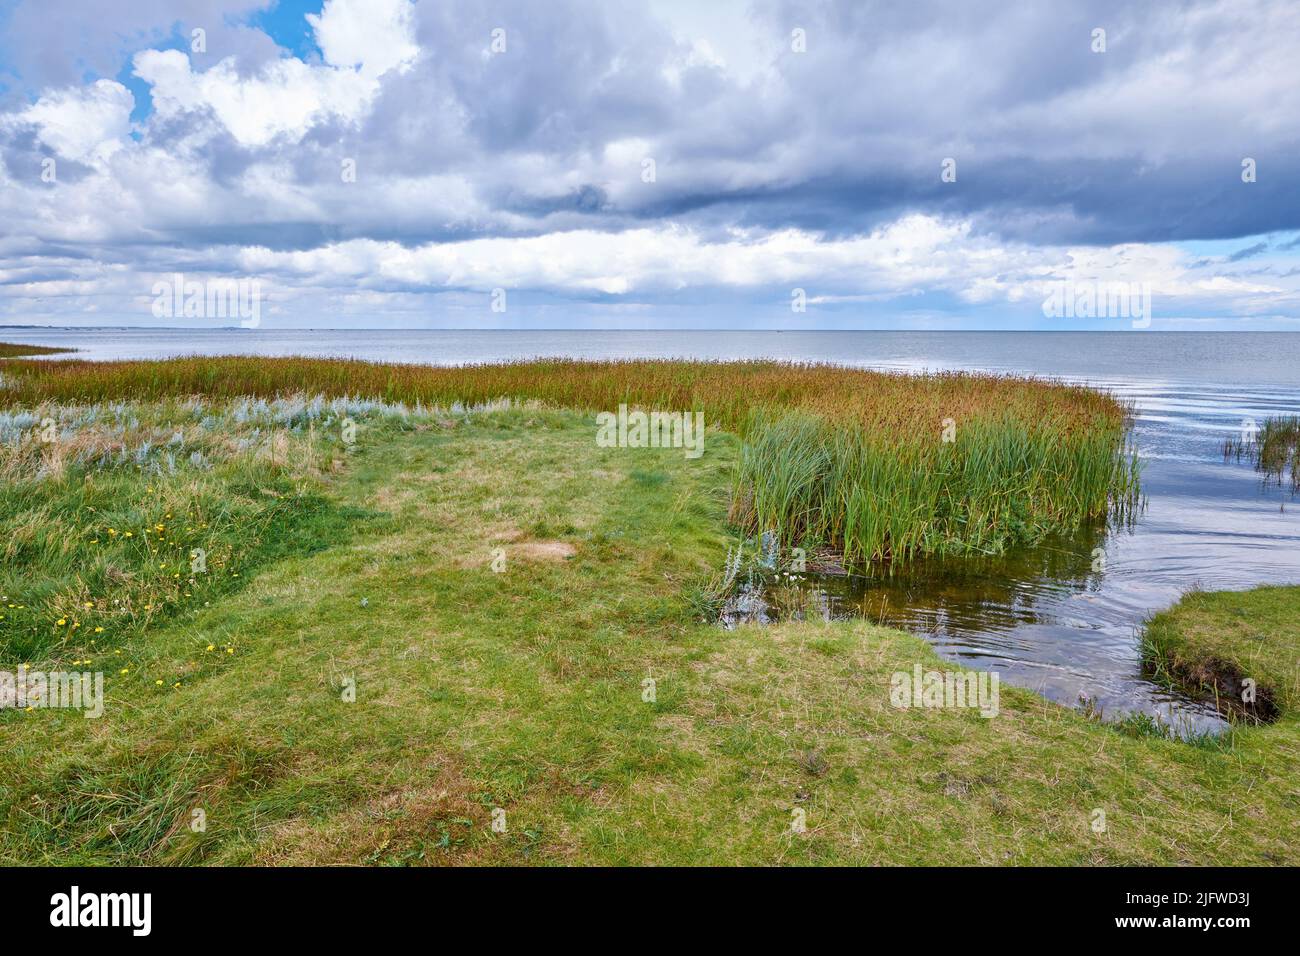 Landschaft von Sumpfsee mit Schilf gegen einen bewölkten Horizont. Grünes Feld von wildem Gras am Meer mit einem blauen Himmel in Dänemark. Eine friedliche Natur Stockfoto